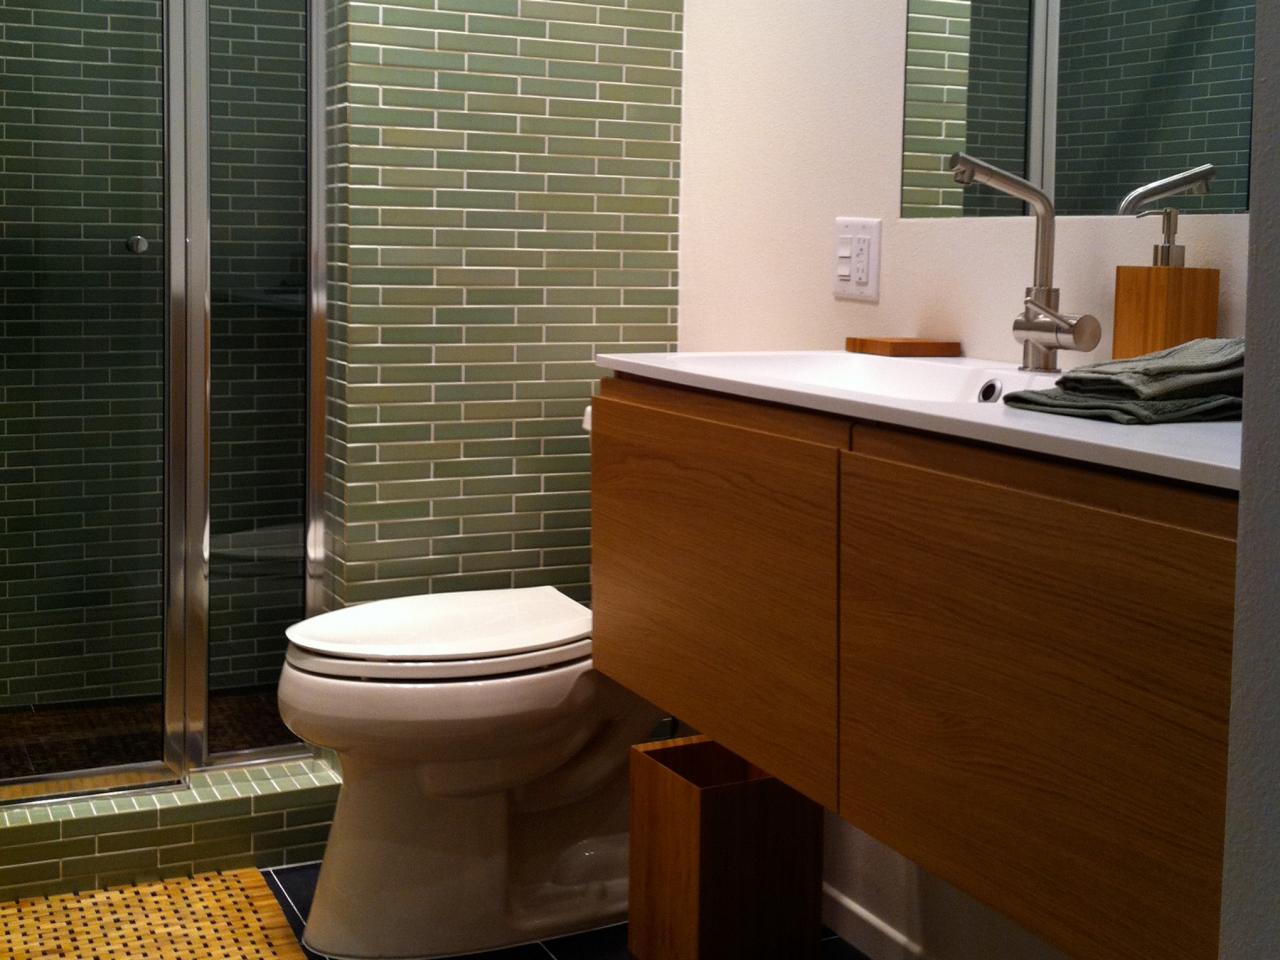 RMS-emanueljay_bathroom-mid-century-modern-vanity-toilet-shower-tile_s4x3.jpg.rend.hgtvcom.1280.960